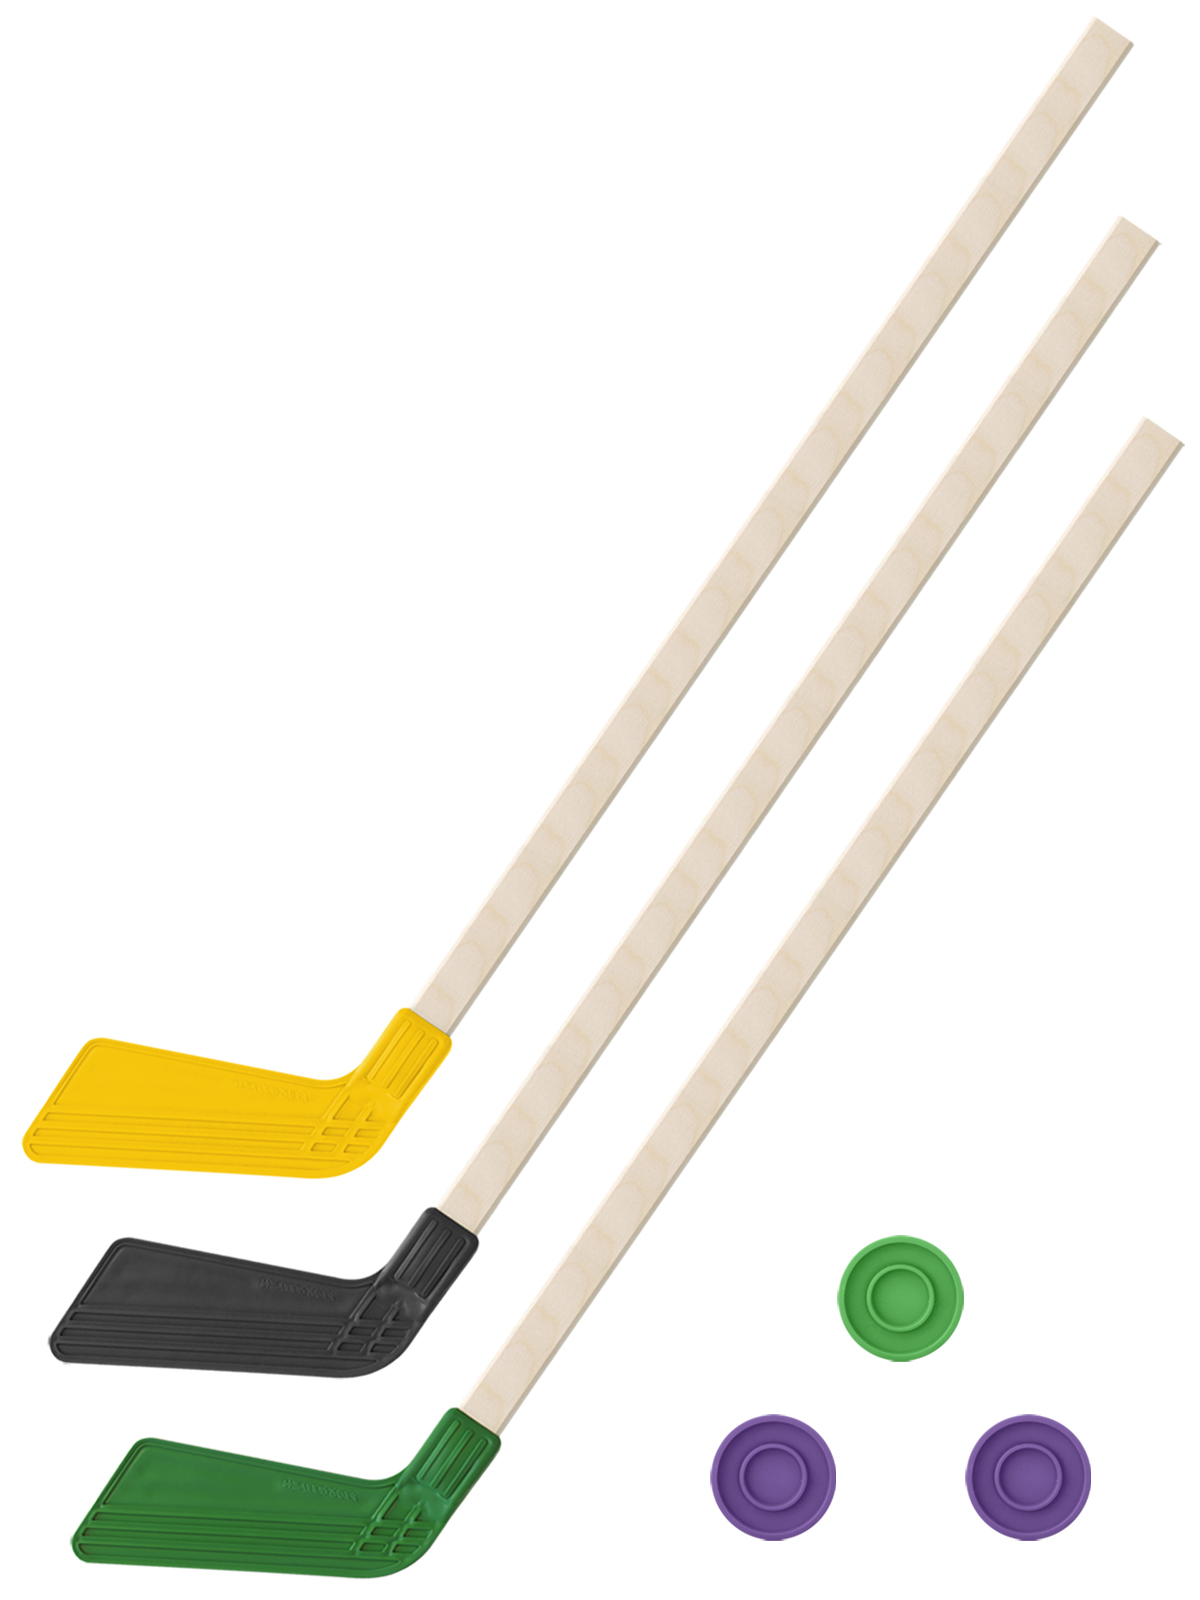 Детский хоккейный набор Задира-плюс 3 в 1 Клюшка хоккейная 80см (жел,черн,зел) + 3 шайбы детский хоккейный набор задира плюс 3 в 1 клюшка хоккейная 80 см 2зел 1черн 3 шайбы